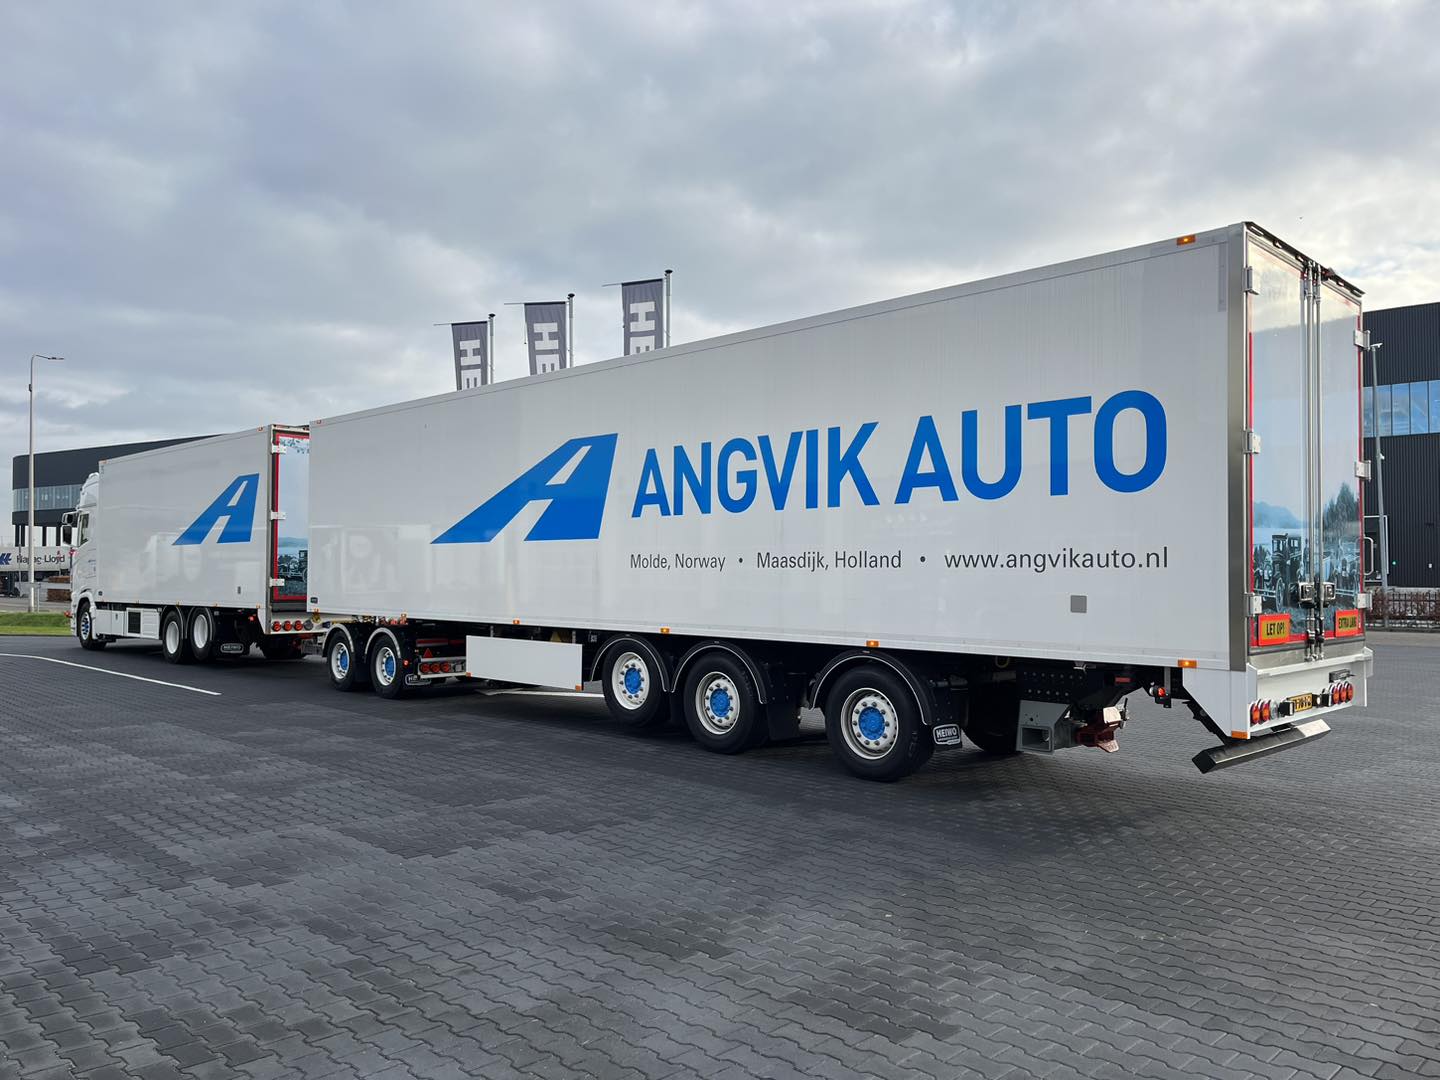 Angvik Auto Holland kiest voor Heiwo